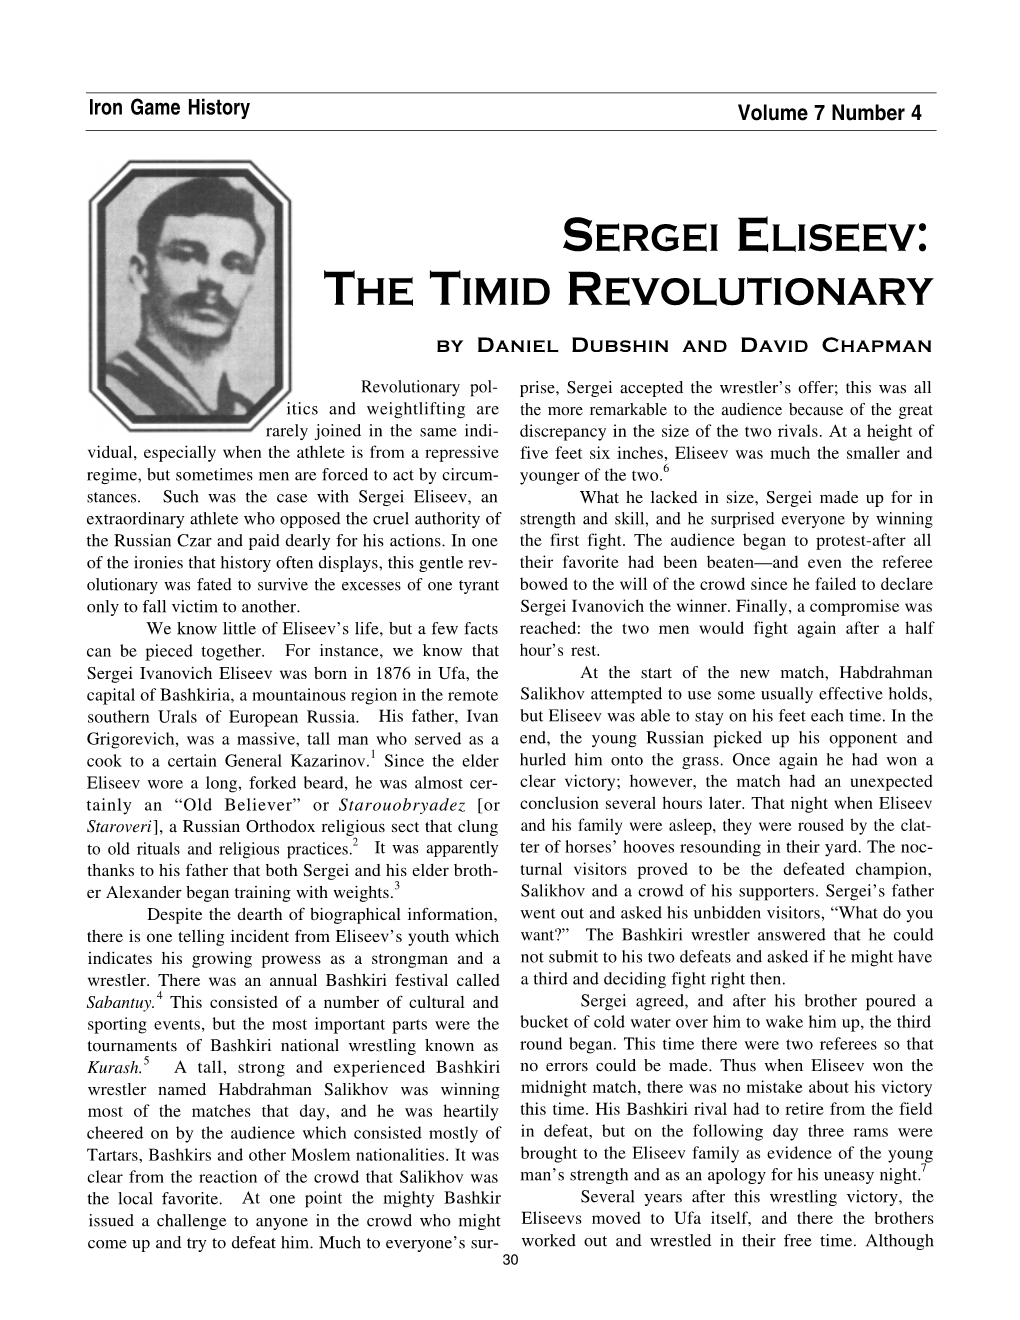 Sergei Eliseev: the Timid Revolutionary